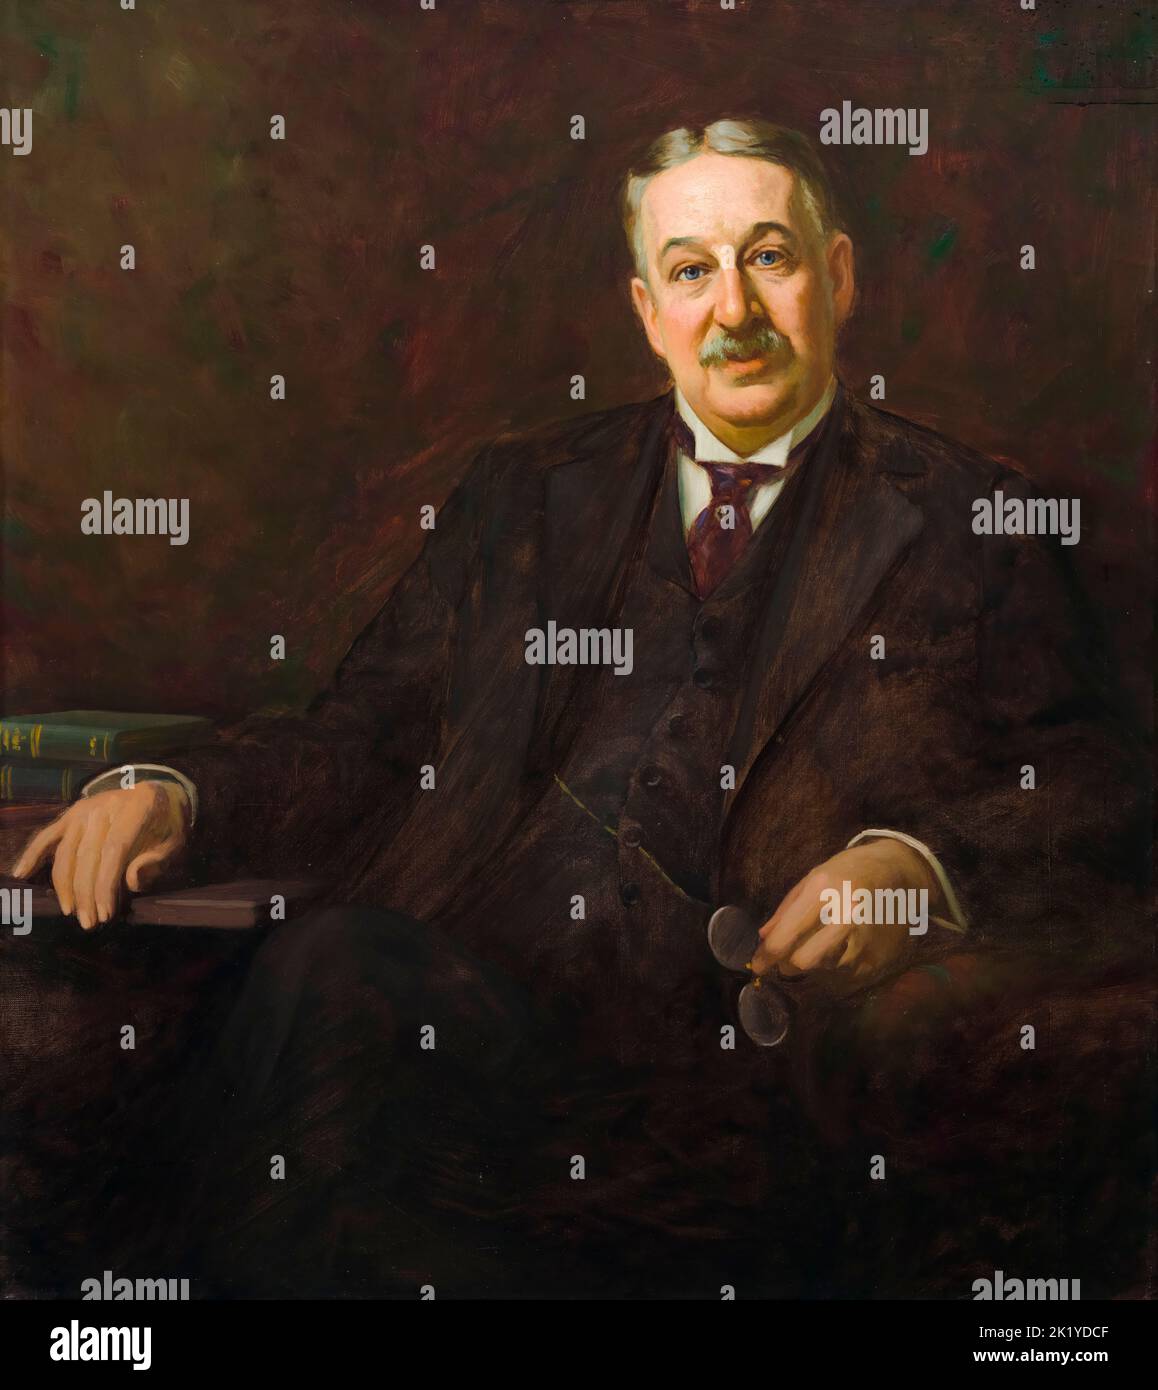 King Camp Gillette (1855-1932), empresario estadounidense, inventor de la navaja de afeitar desechable, retrato pintado al óleo sobre lienzo de Jean Mannheim, 1911 Foto de stock